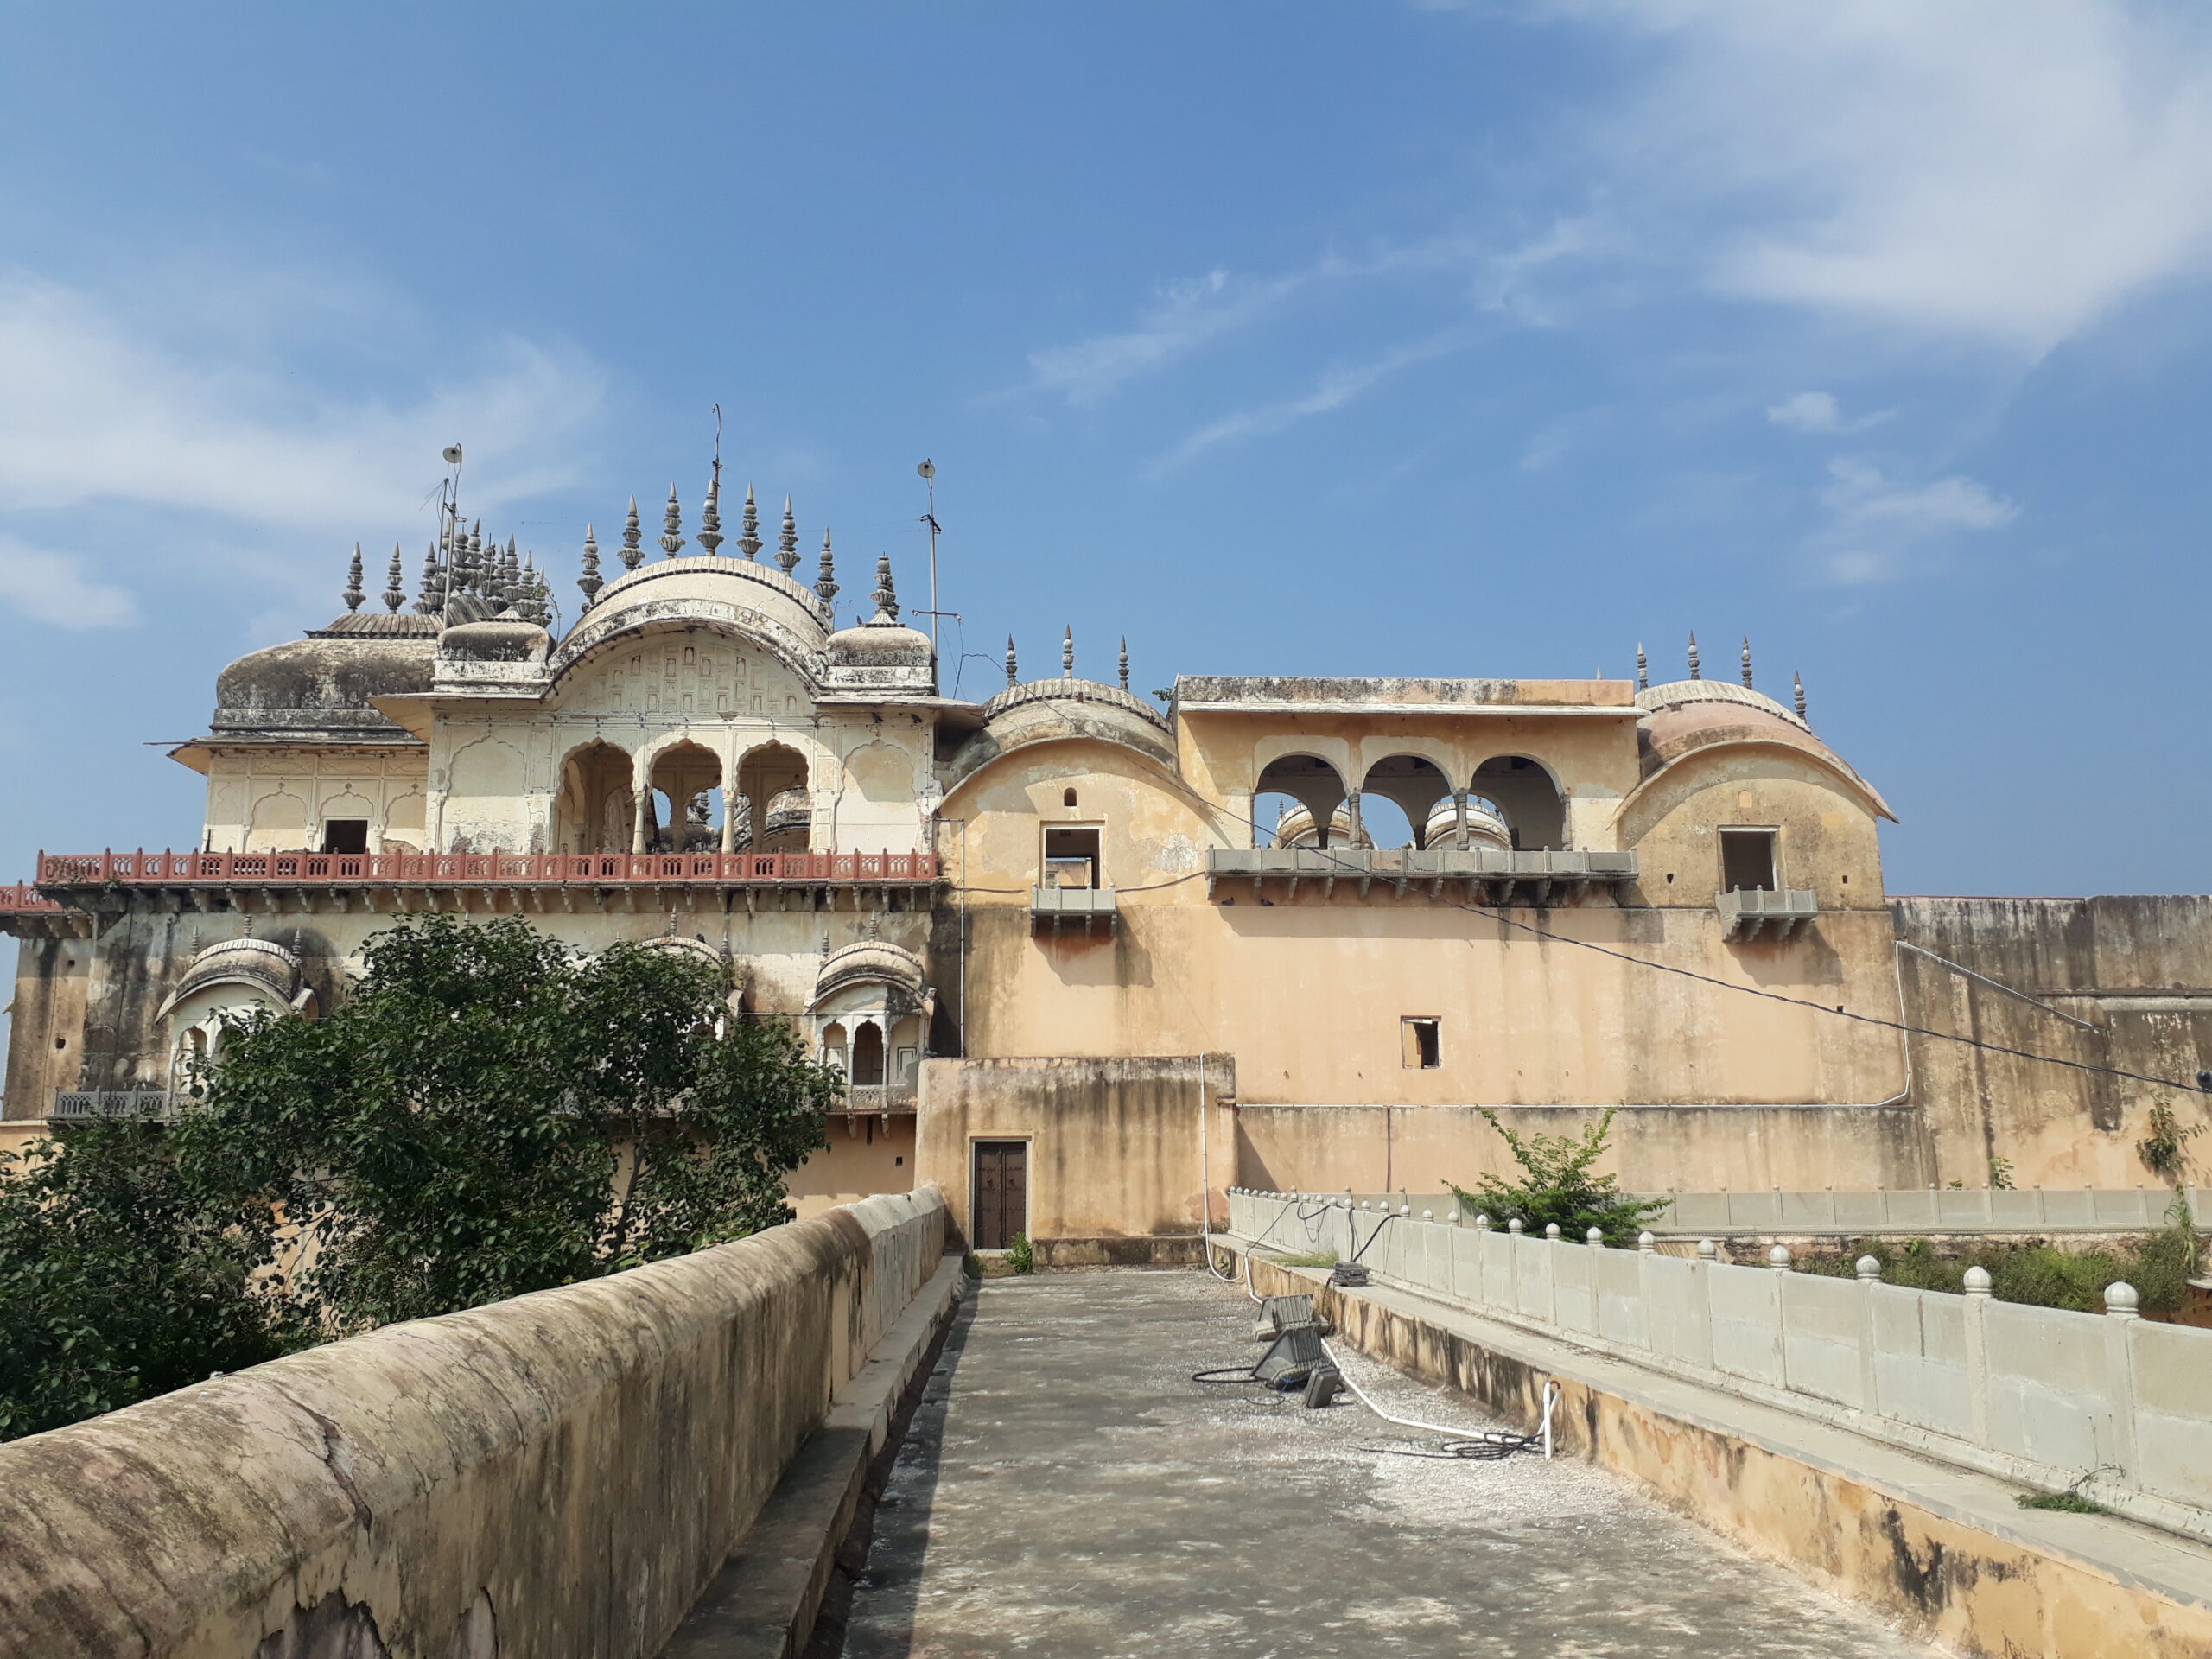 अलवर: पूर्व में उलवर के नाम से जाना जाने वाला अलवर शहर की स्थापना राजपूत शासक प्रताप सिंह ने 1770 में की थी। इतिहास प्रेमियों के लिए, यह शहर ईस्ट इंडिया कंपनी के साथ संधि पर हस्ताक्षर करने वाला पहला शहर था और विभिन्न लड़ाइयों और सैन्य गतिविधियों में भाग लेने के लिए प्रसिद्ध रहा है। अलवर को भानगढ़ के ‘प्रेतवाधित’ किले के लिए भी जाना जाता है। यह स्मारक अपने चिनाई के माक और भव्य संरचनात्मक डिज़ाइन के लिए प्रसिद्द है। प्रचुर वनस्पतियों और जीवों के साथ, यह स्थान संतुलित पारिस्थितिकी का एक आदर्श उदाहरण है।